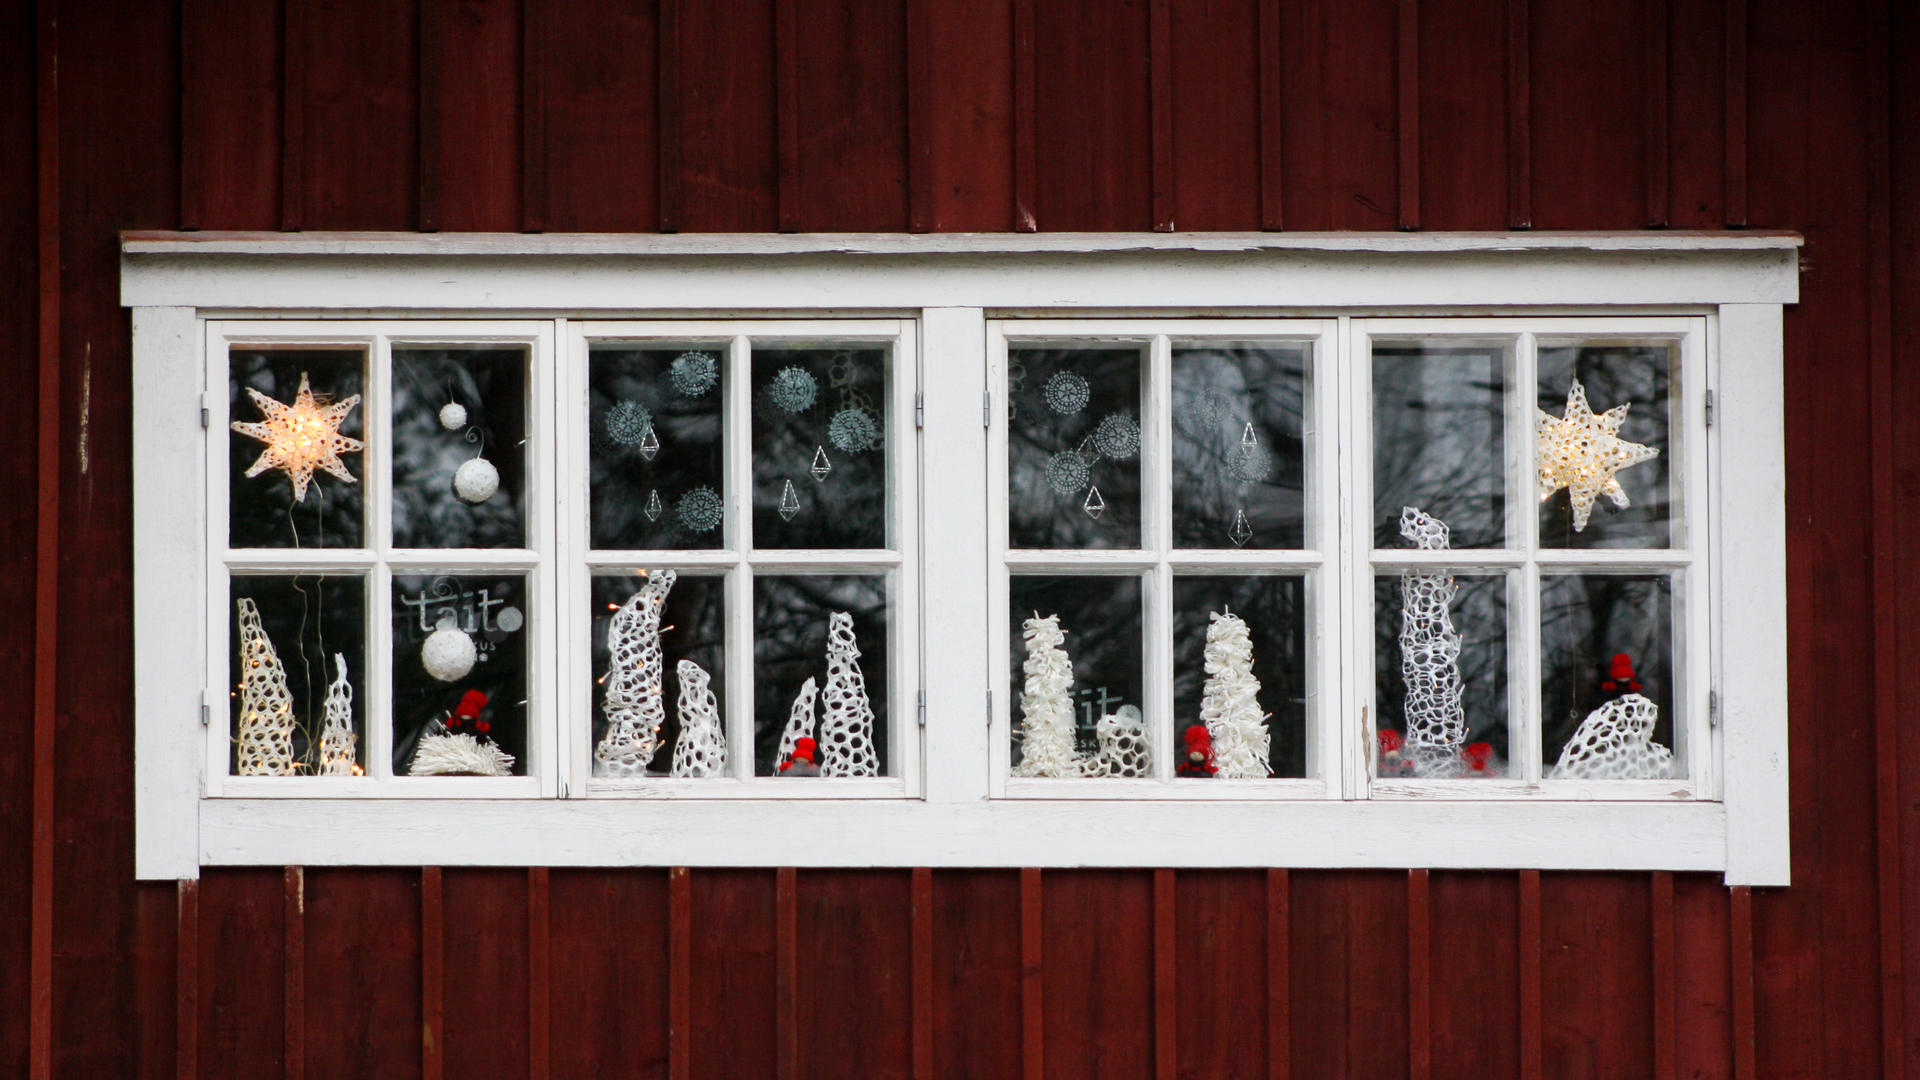 Taitokeskuksen ikkuna, jossa näkyy joulukoristeita, kuten tonttuja, lumihiutaleita ja tähtiä.